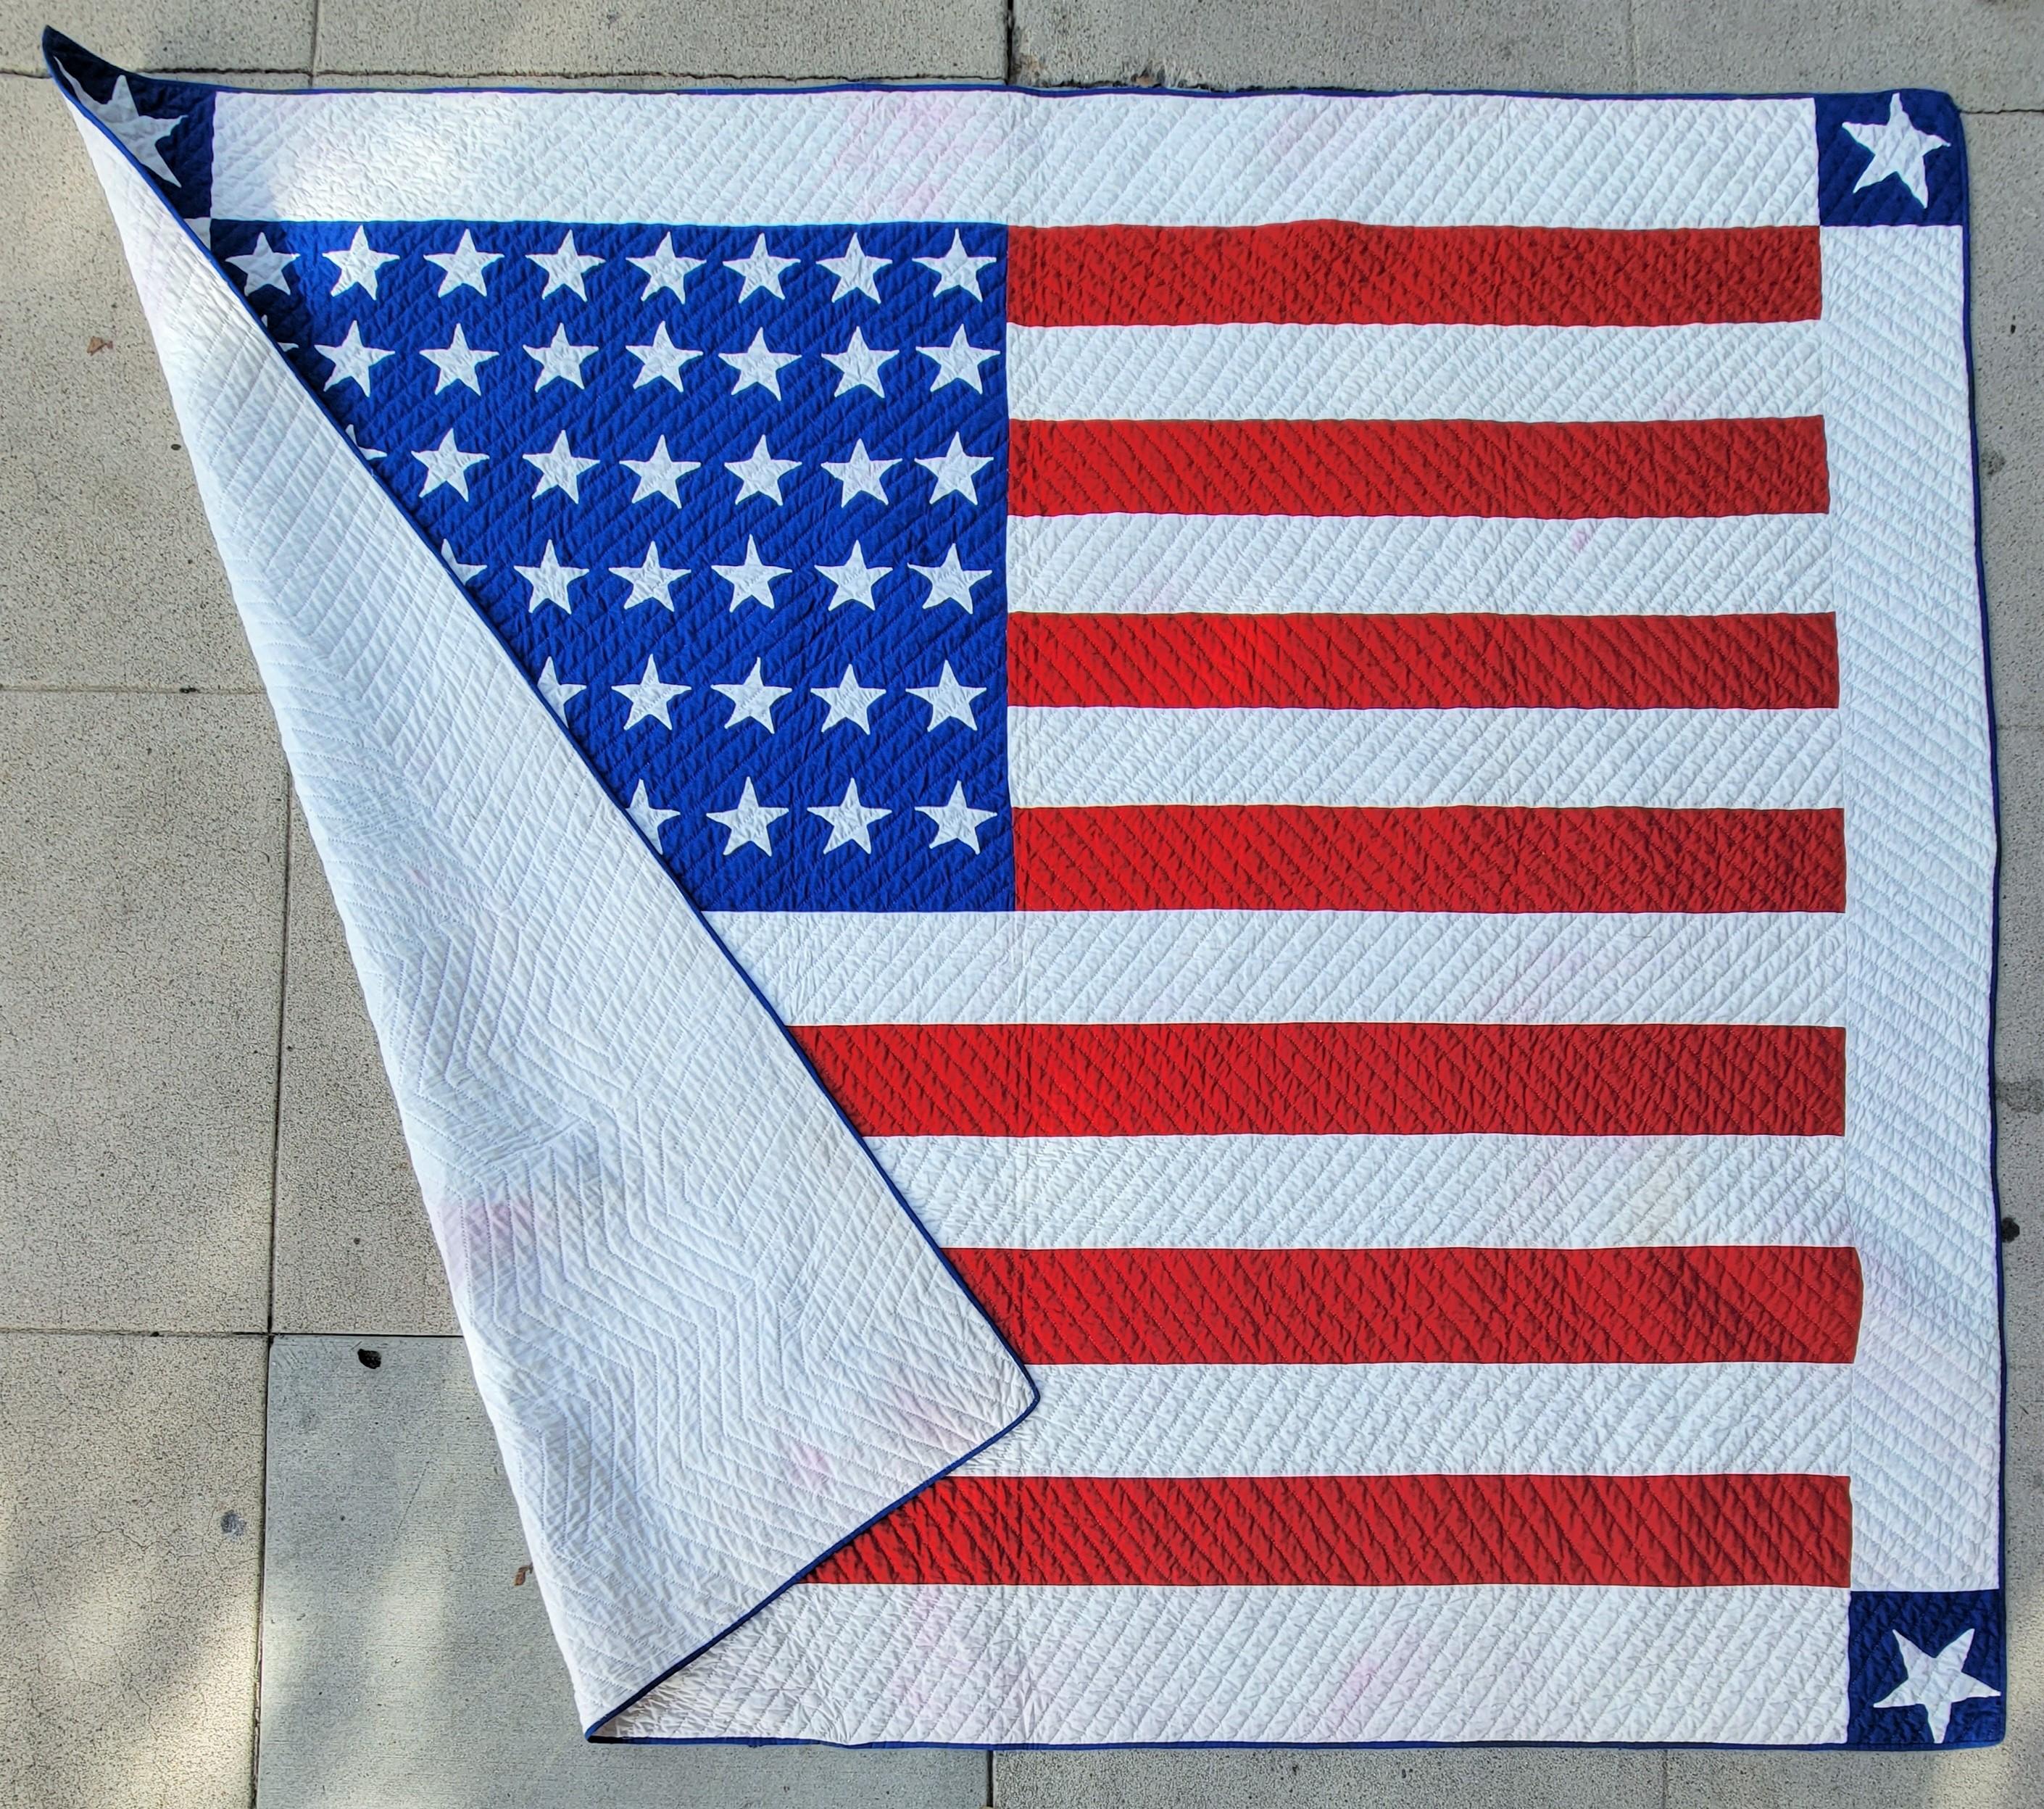 Dieser erstaunliche Flaggenquilt mit 48 handgequilteten Sternen ist in erstaunlichem Zustand. Es ist ein einzigartiger Flaggenquilt. Wir haben diese Steppdecke vor über 21 Jahren verkauft und sie vom ursprünglichen Käufer/Sammler zurückerhalten. Wir